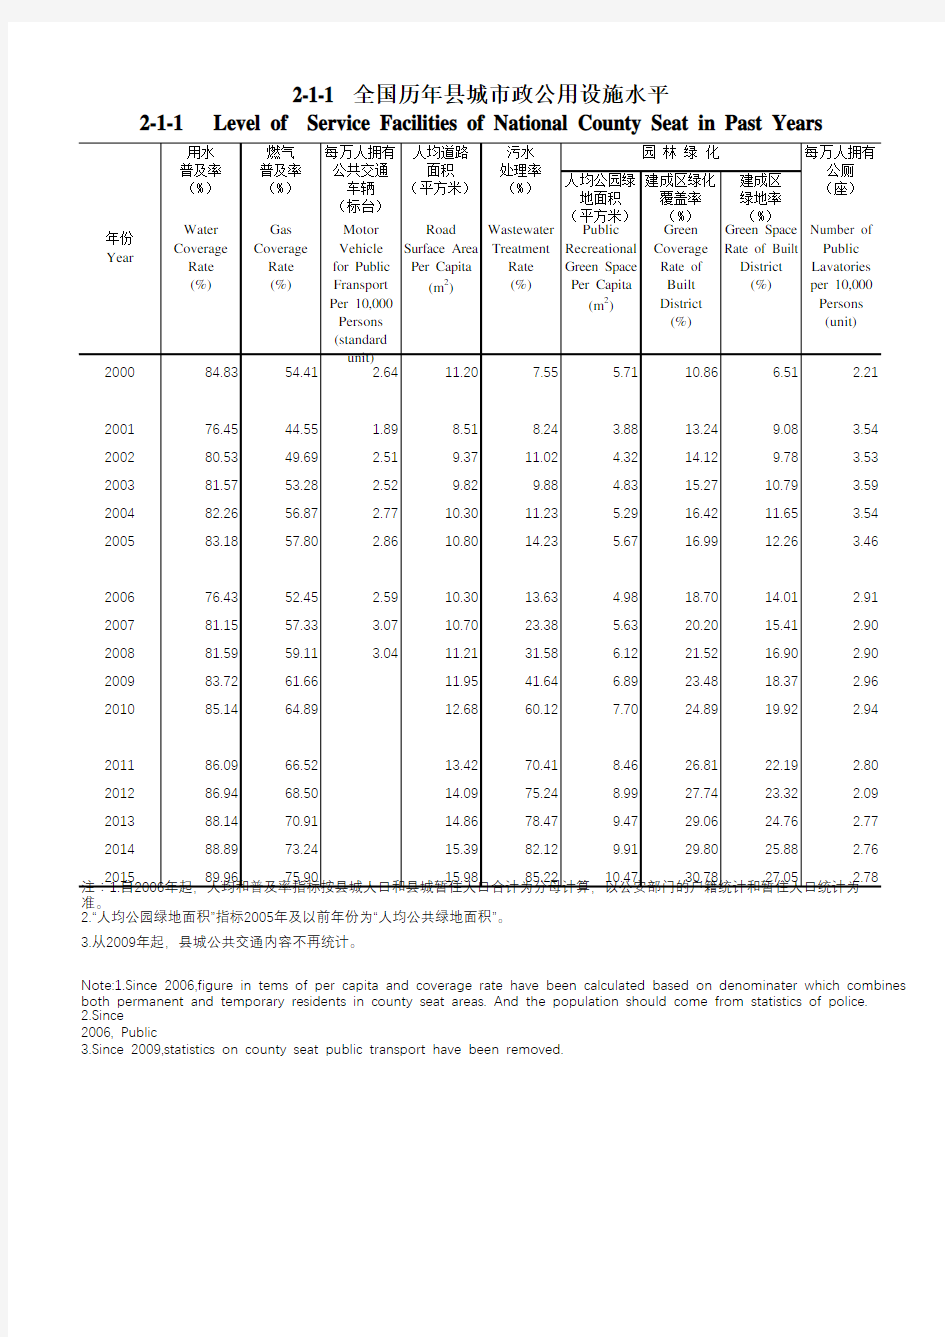 中国城乡建设统计年鉴2015全国各省市县数据：2-全国历年县城市政公用设施水平